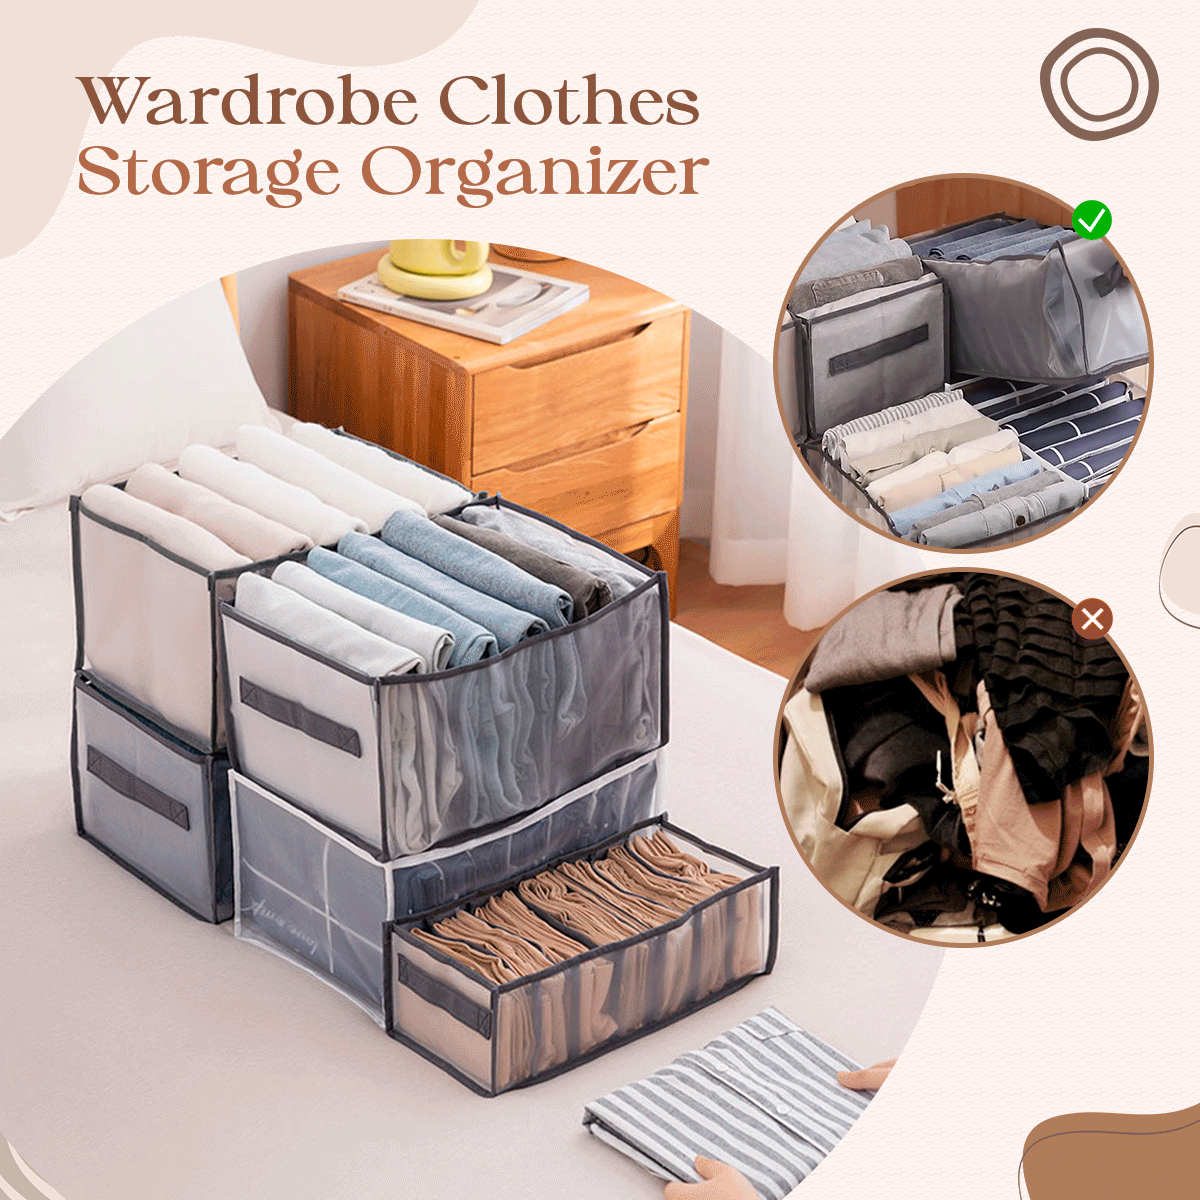 Wardrobe Clothes Storage Organizer